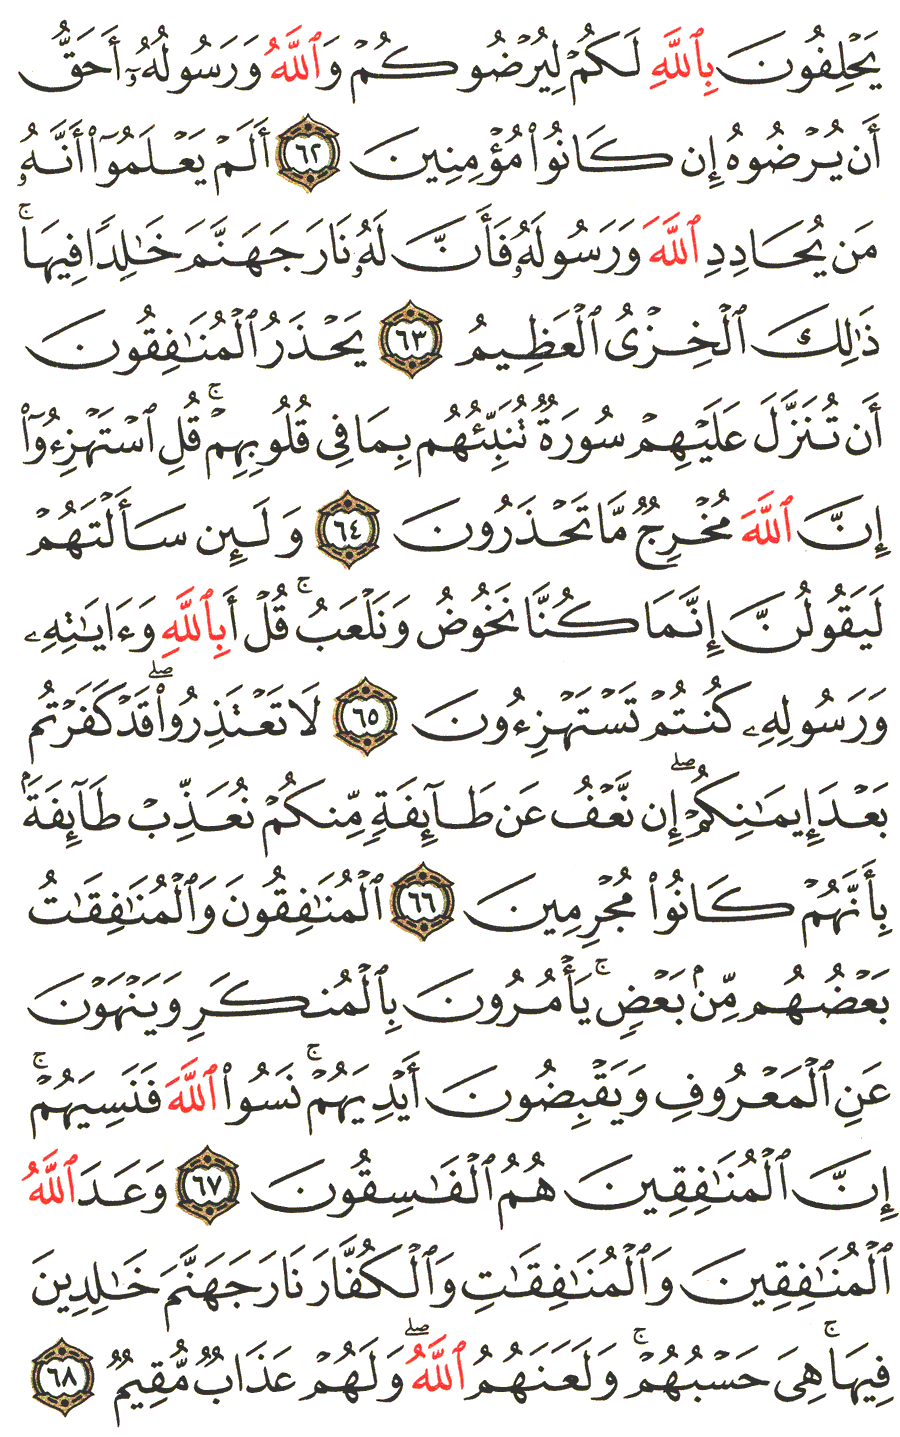 الصفحة 197 من القرآن الكريم